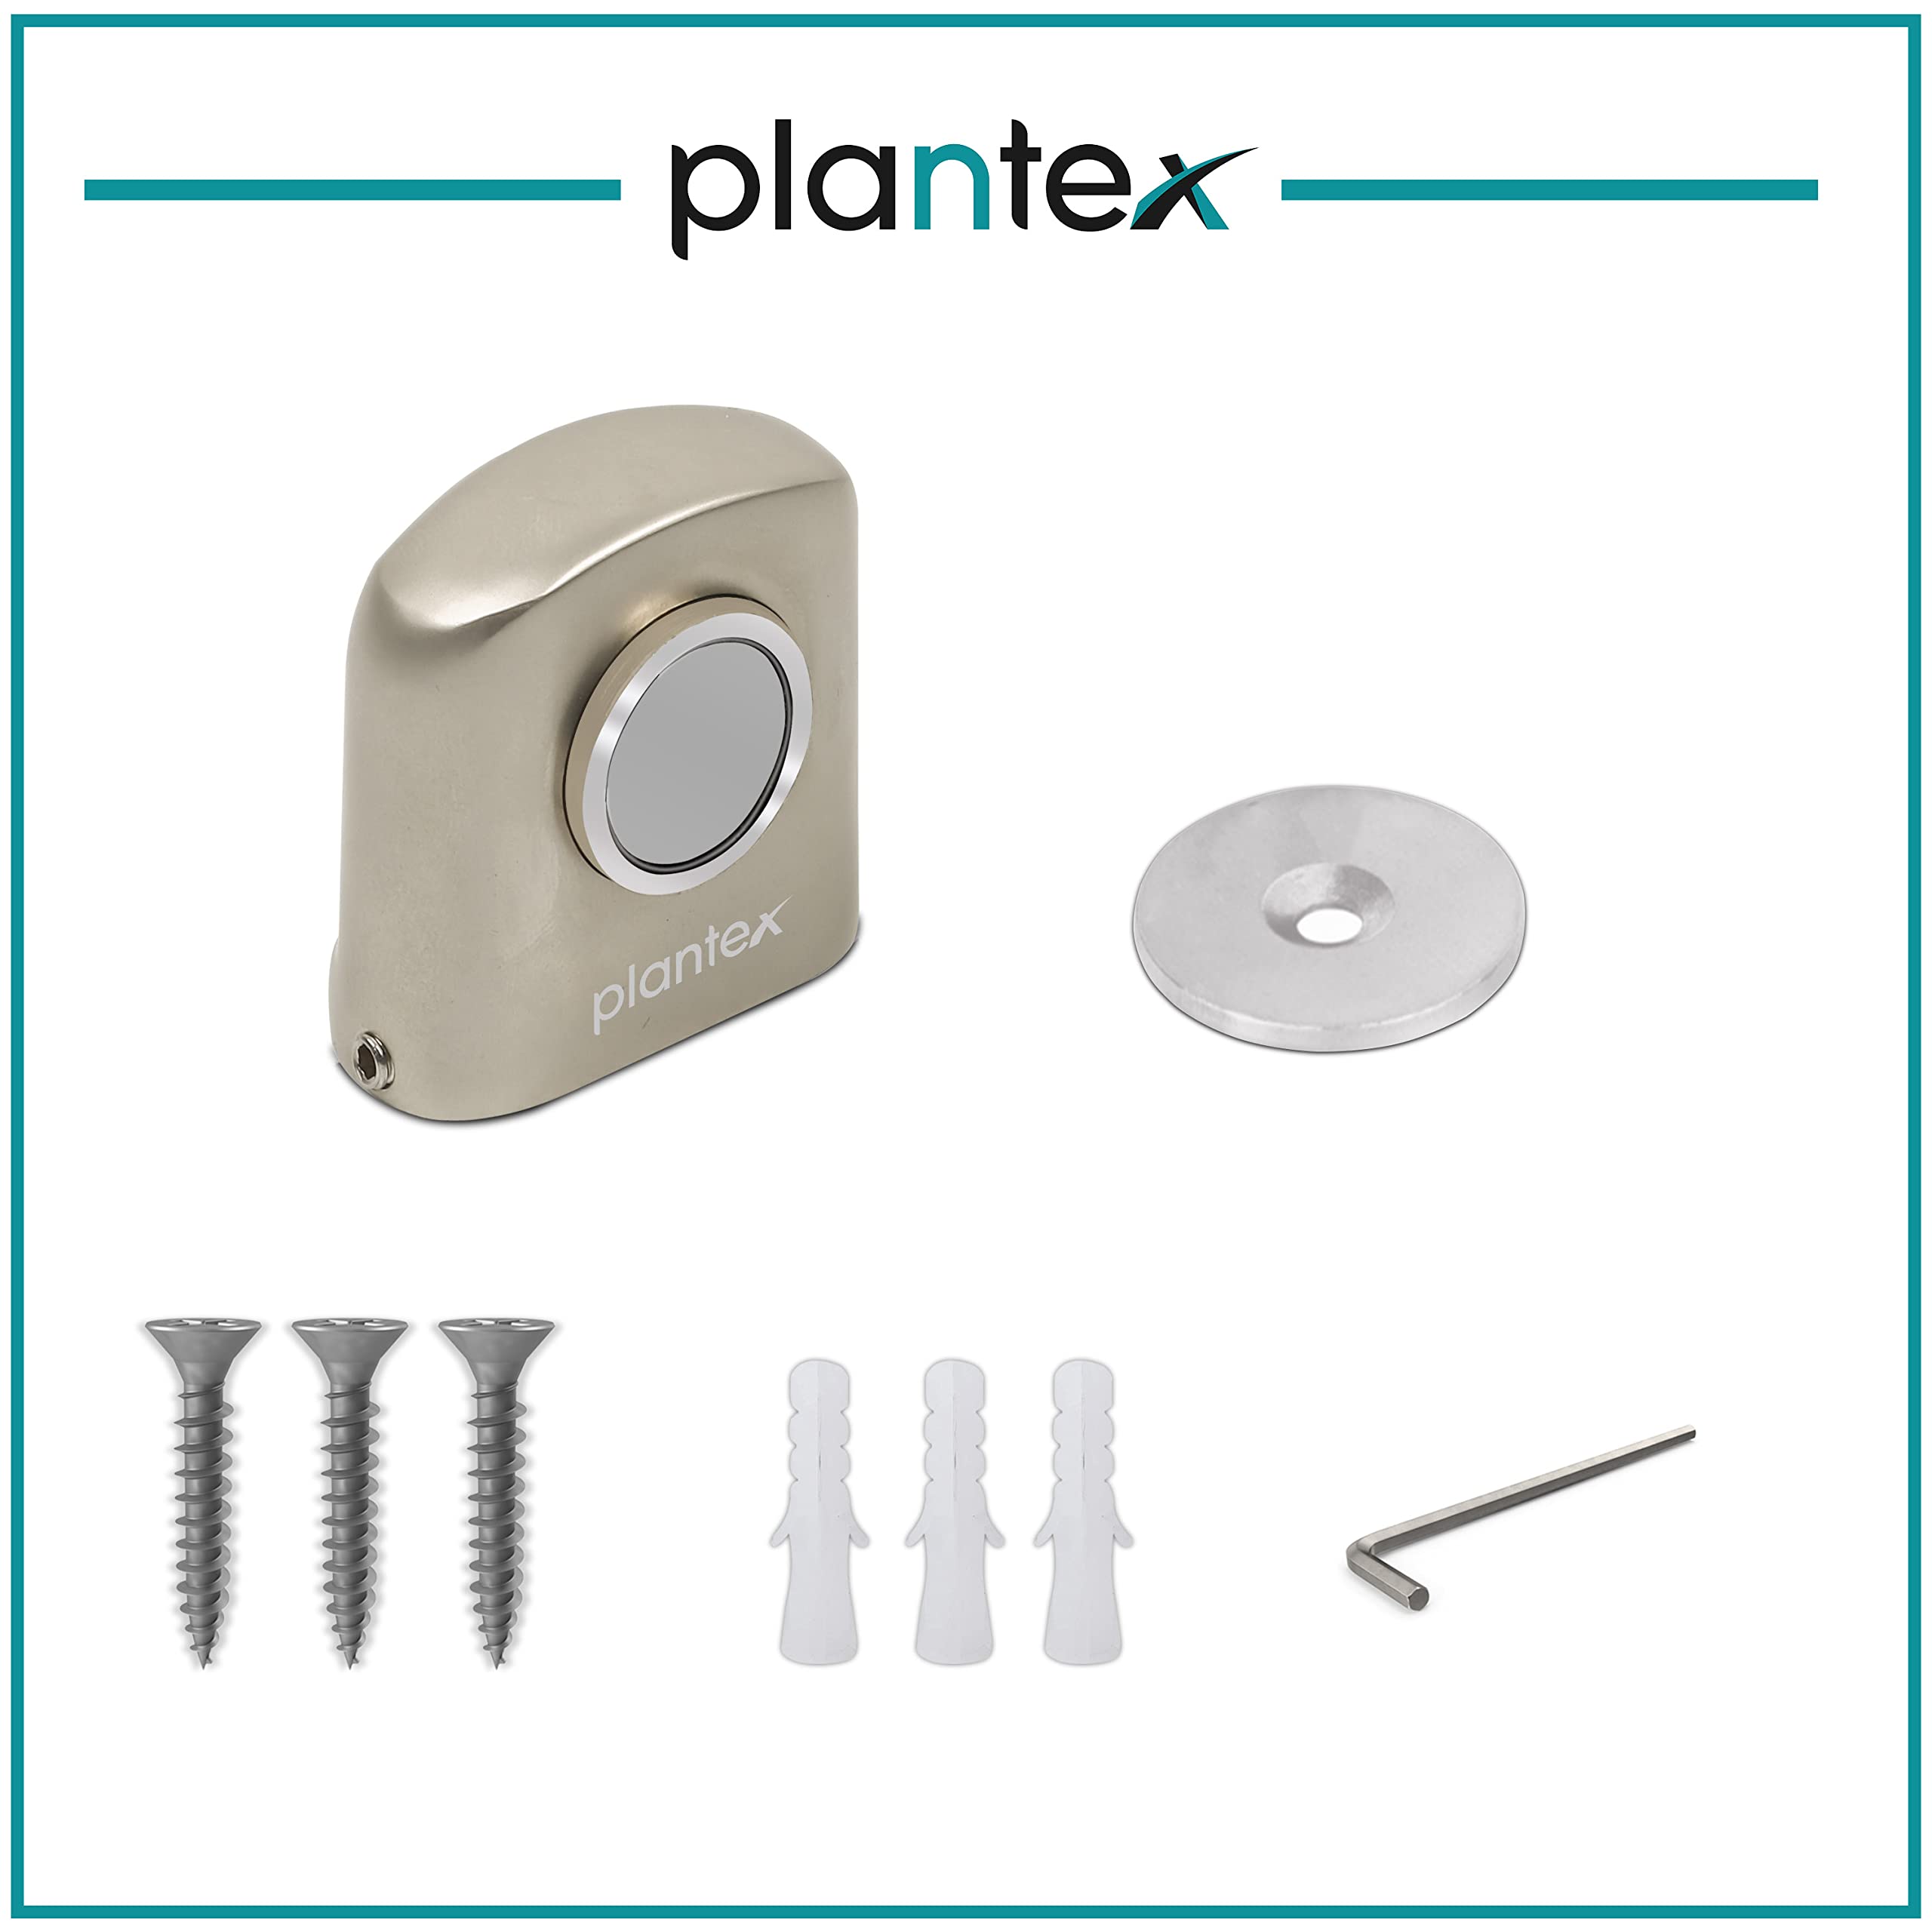 Plantex Heavy Duty Door Magnet Stopper/Door Catch Holder for Home/Office/Hotel, Floor Mounted Soft-Catcher to Hold Wooden/Glass/PVC Door - Pack of 6 (193 - Satin Matt)